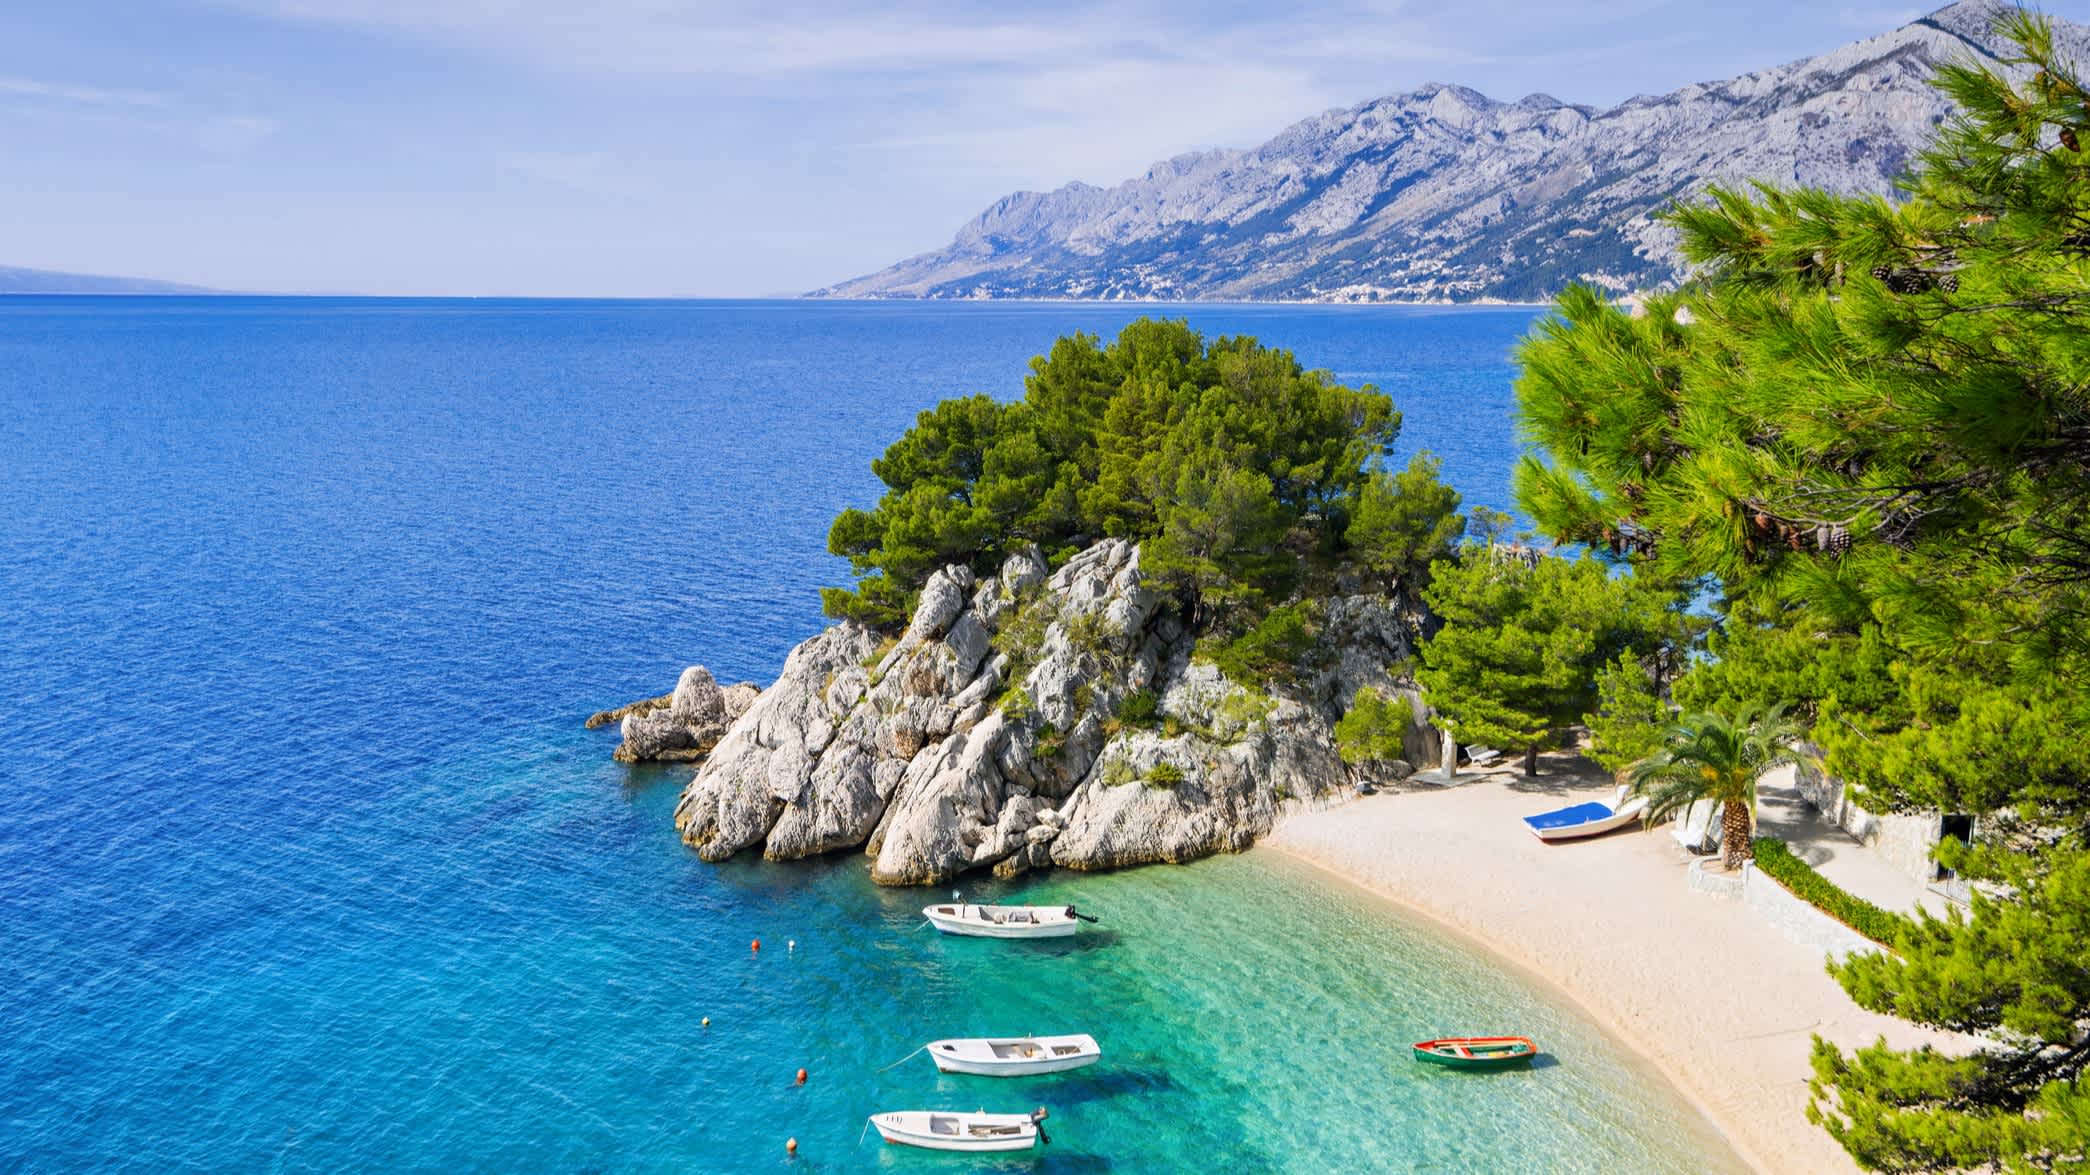 Strand in der Nähe von Brela Stadt, Dalmatien, Kroatien

